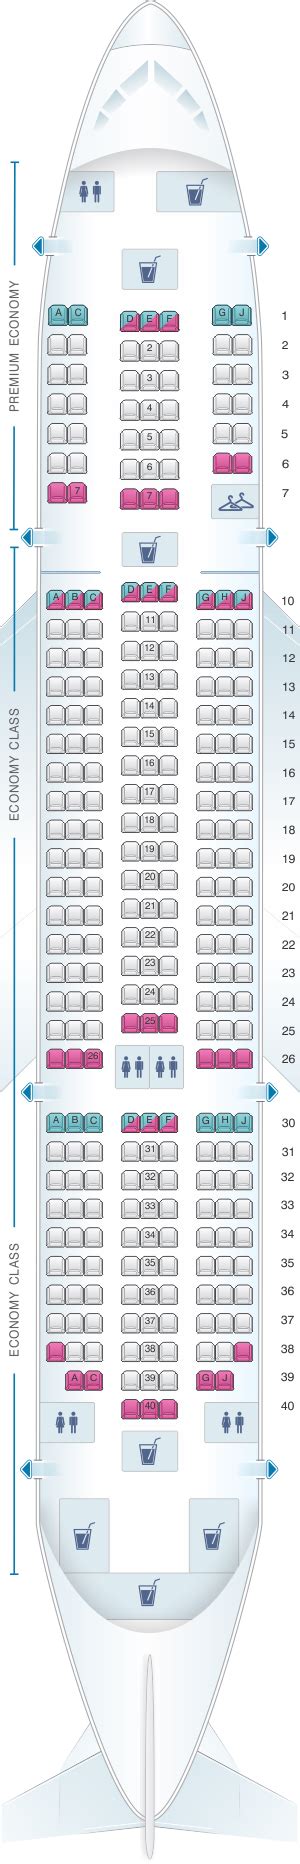 tui seating plan 787 dreamliner